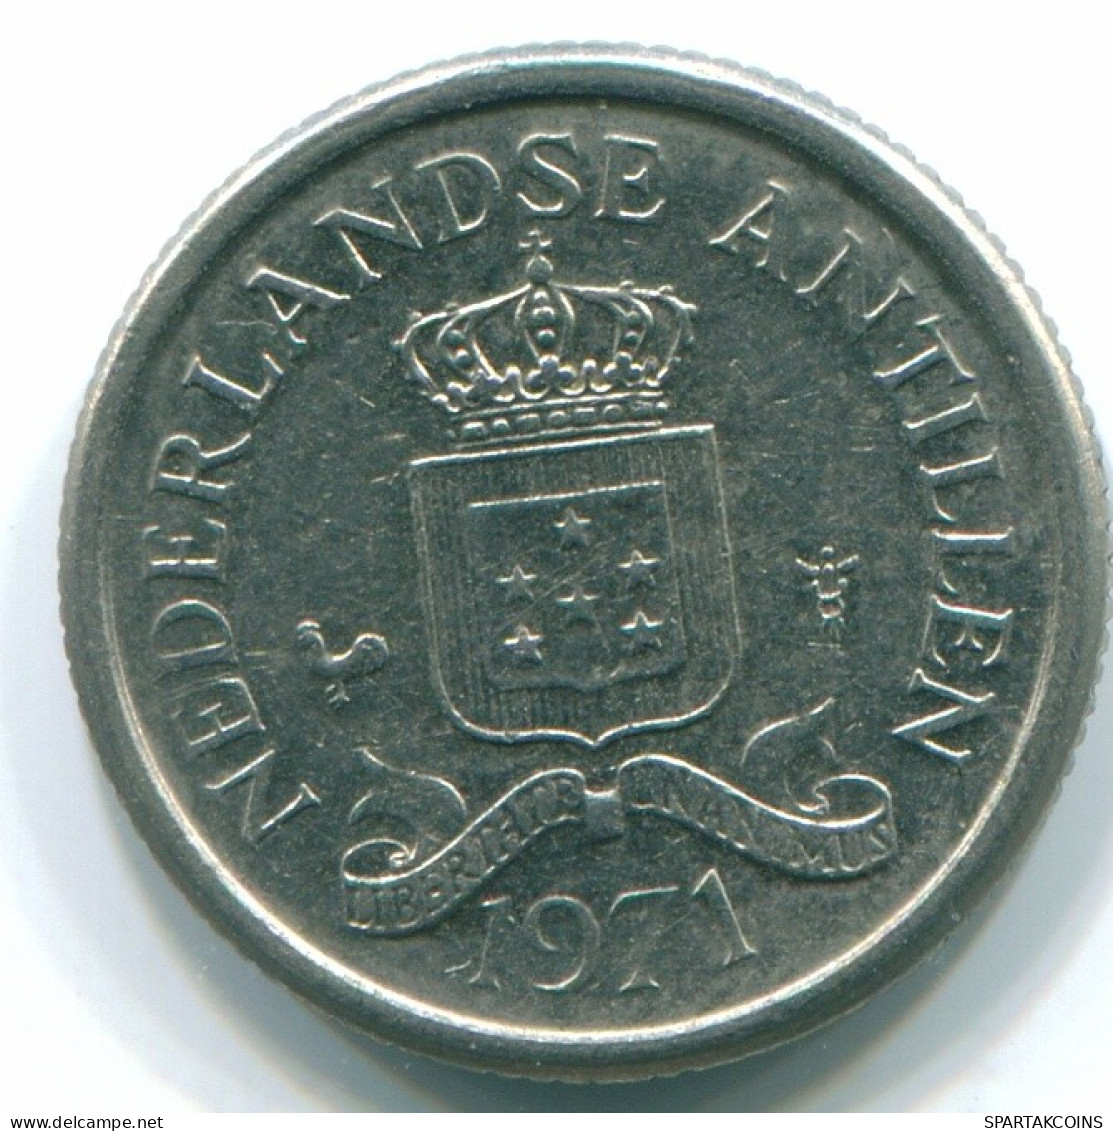 10 CENTS 1971 NIEDERLÄNDISCHE ANTILLEN Nickel Koloniale Münze #S13396.D.A - Antille Olandesi